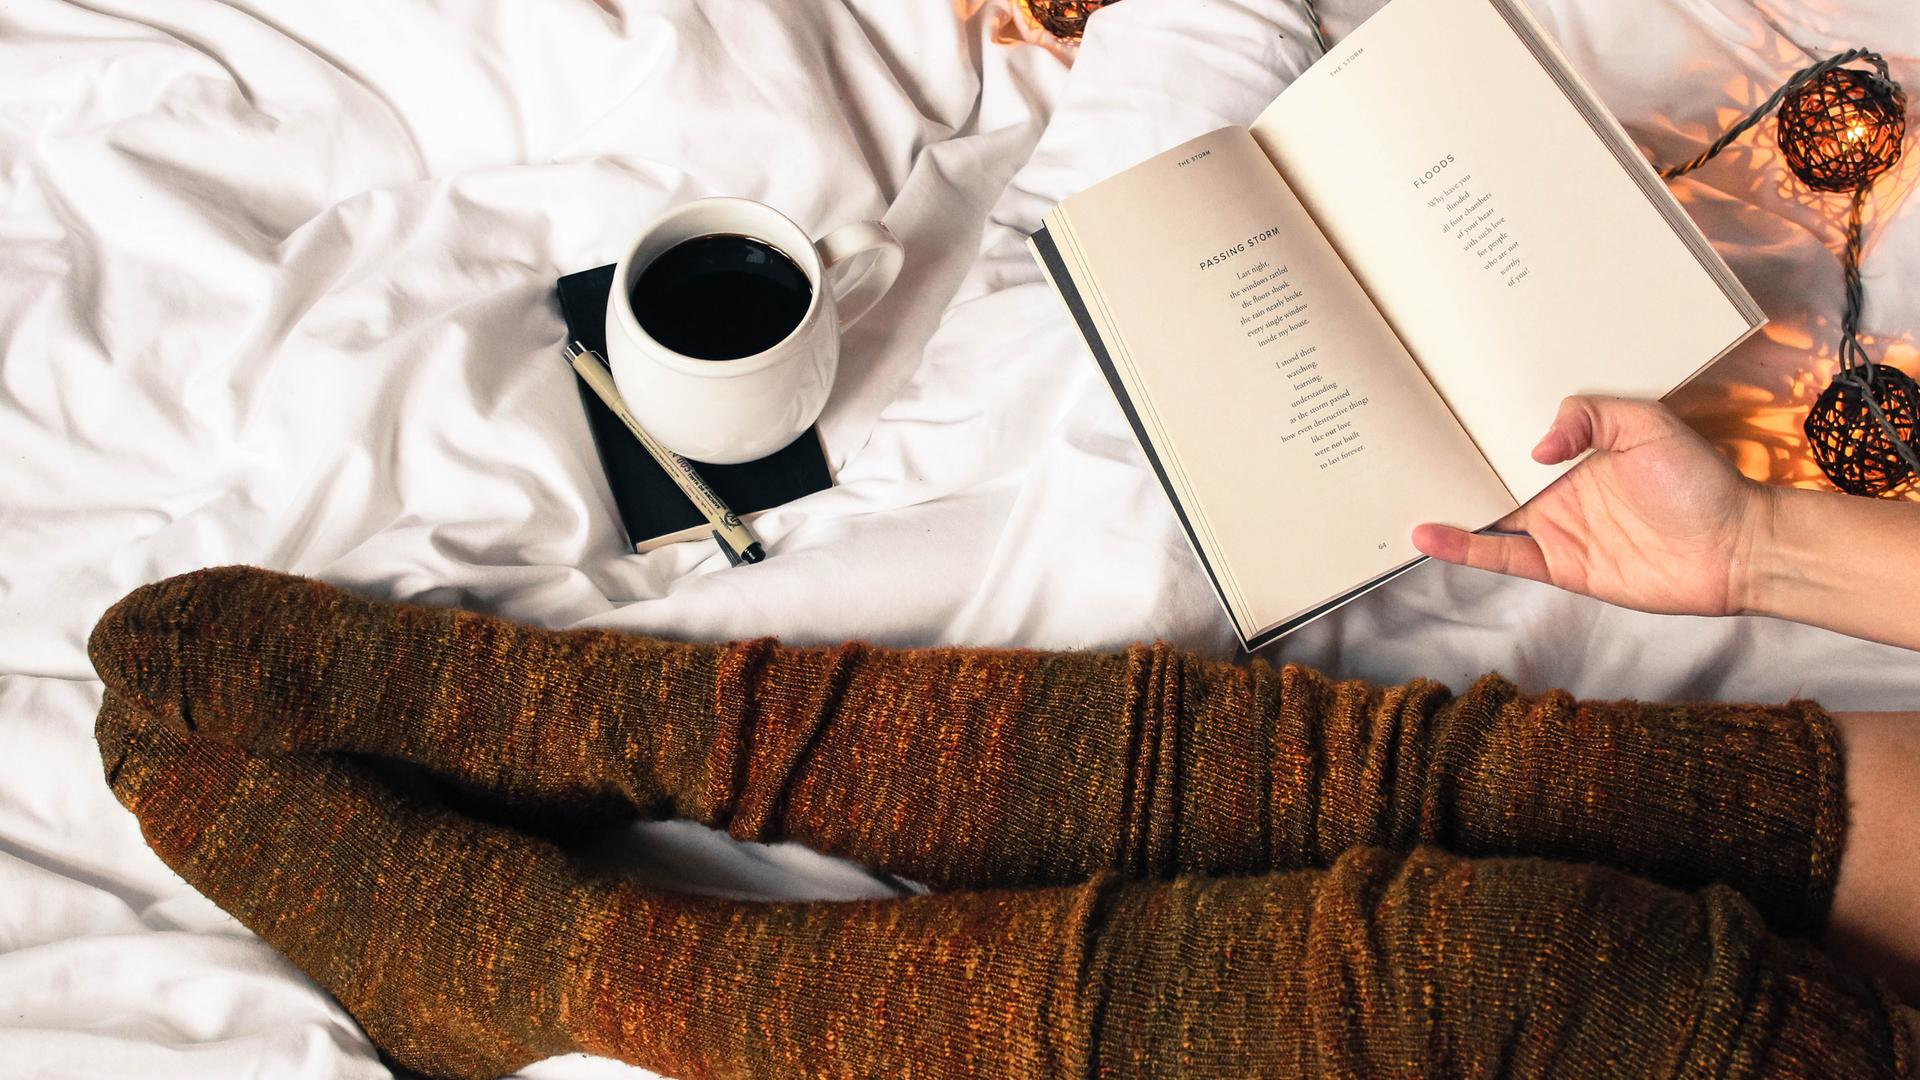 Draufsicht auf ein aufgeschlagenes Buch. Die Beine der Leserin sind sichtbar und in herbstliche, lange Strümpfe gekleidet. Außerdem sieht man eine Tasse Kaffee und Leuchtkugeln. Die Atmosphäre ist herbstlich und behaglich.